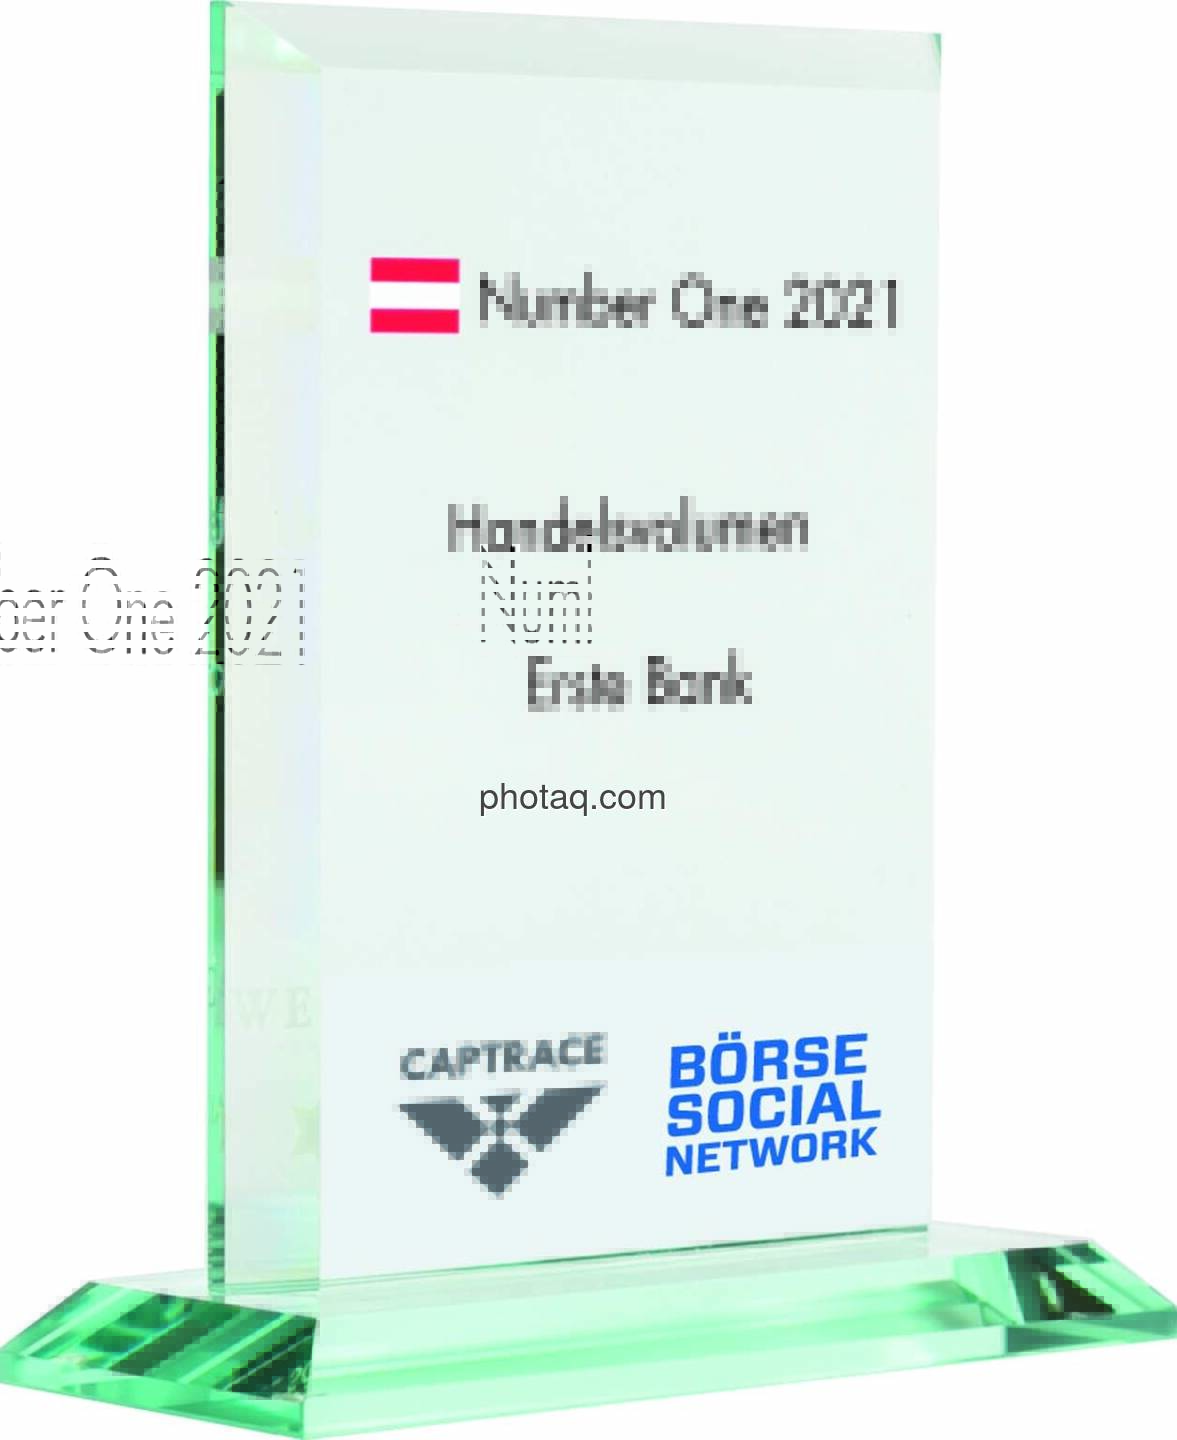 Number One Awards 2021 - Handelsvolumen Erste Bank